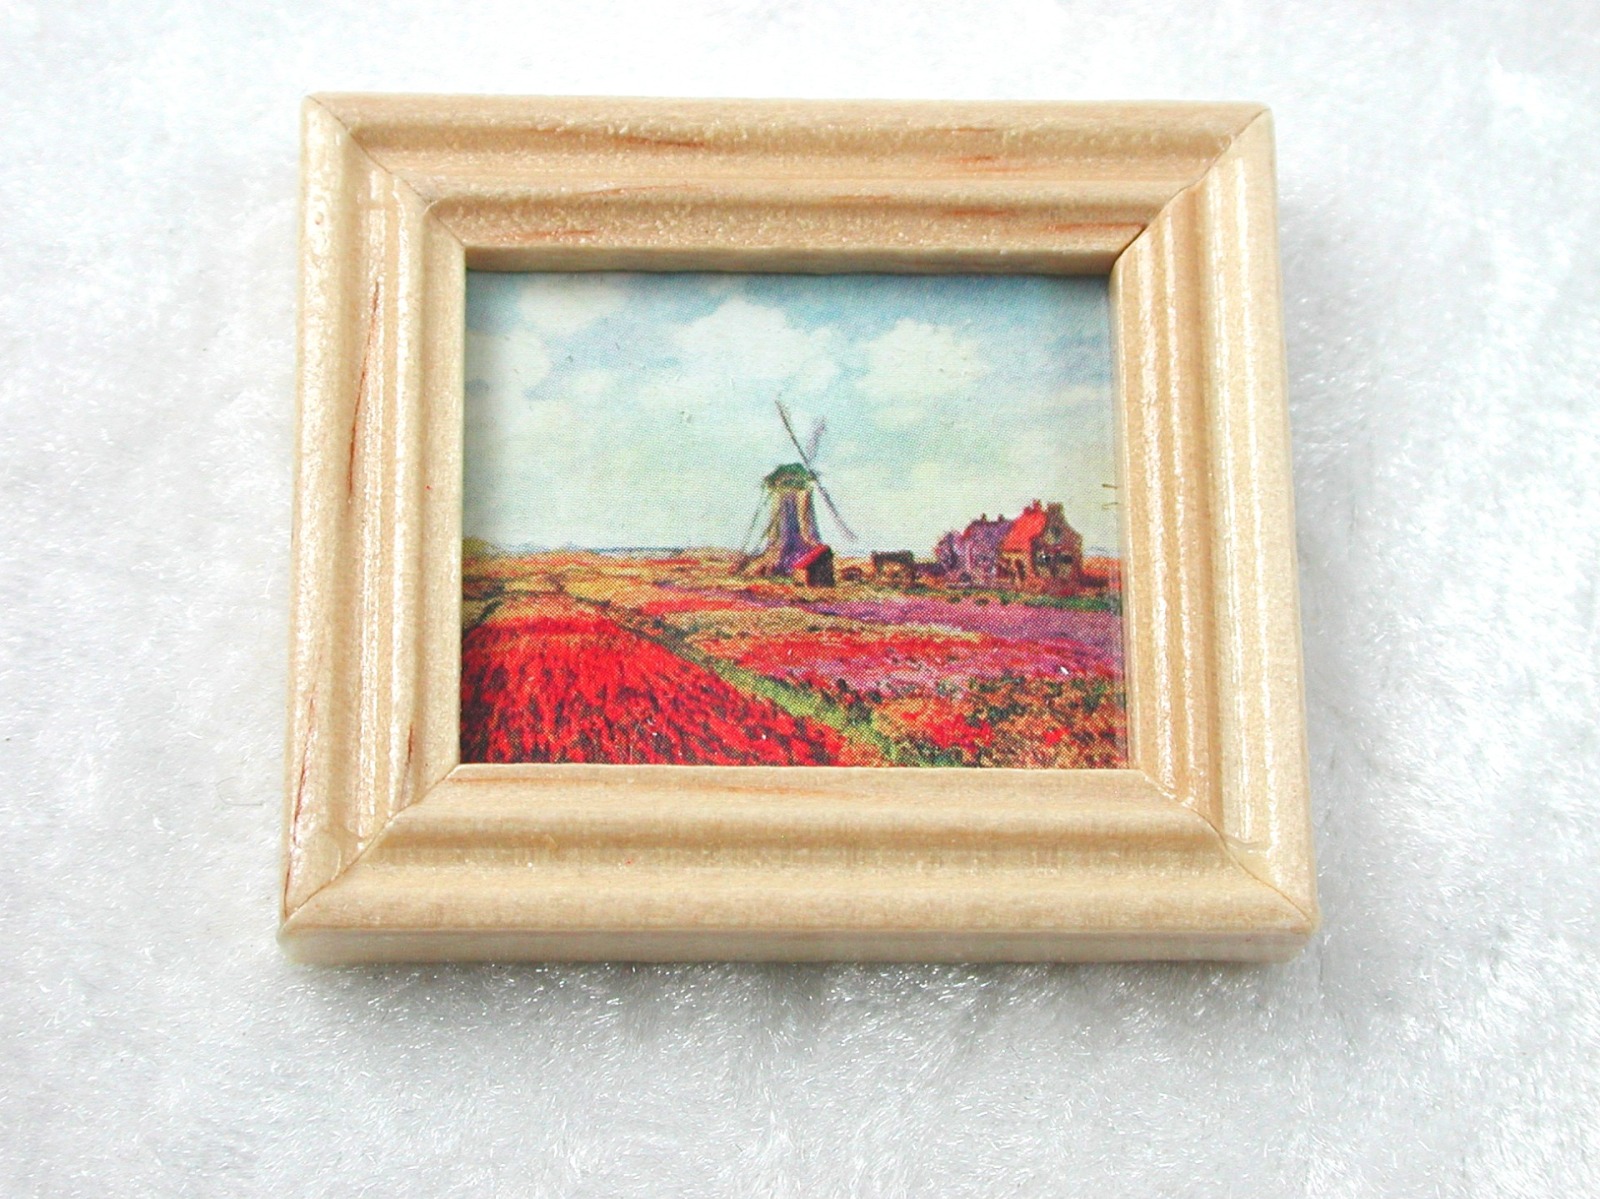 Gemäldekopie Monet Windmühlen im Holzrahmen 3x 4x 05 cm